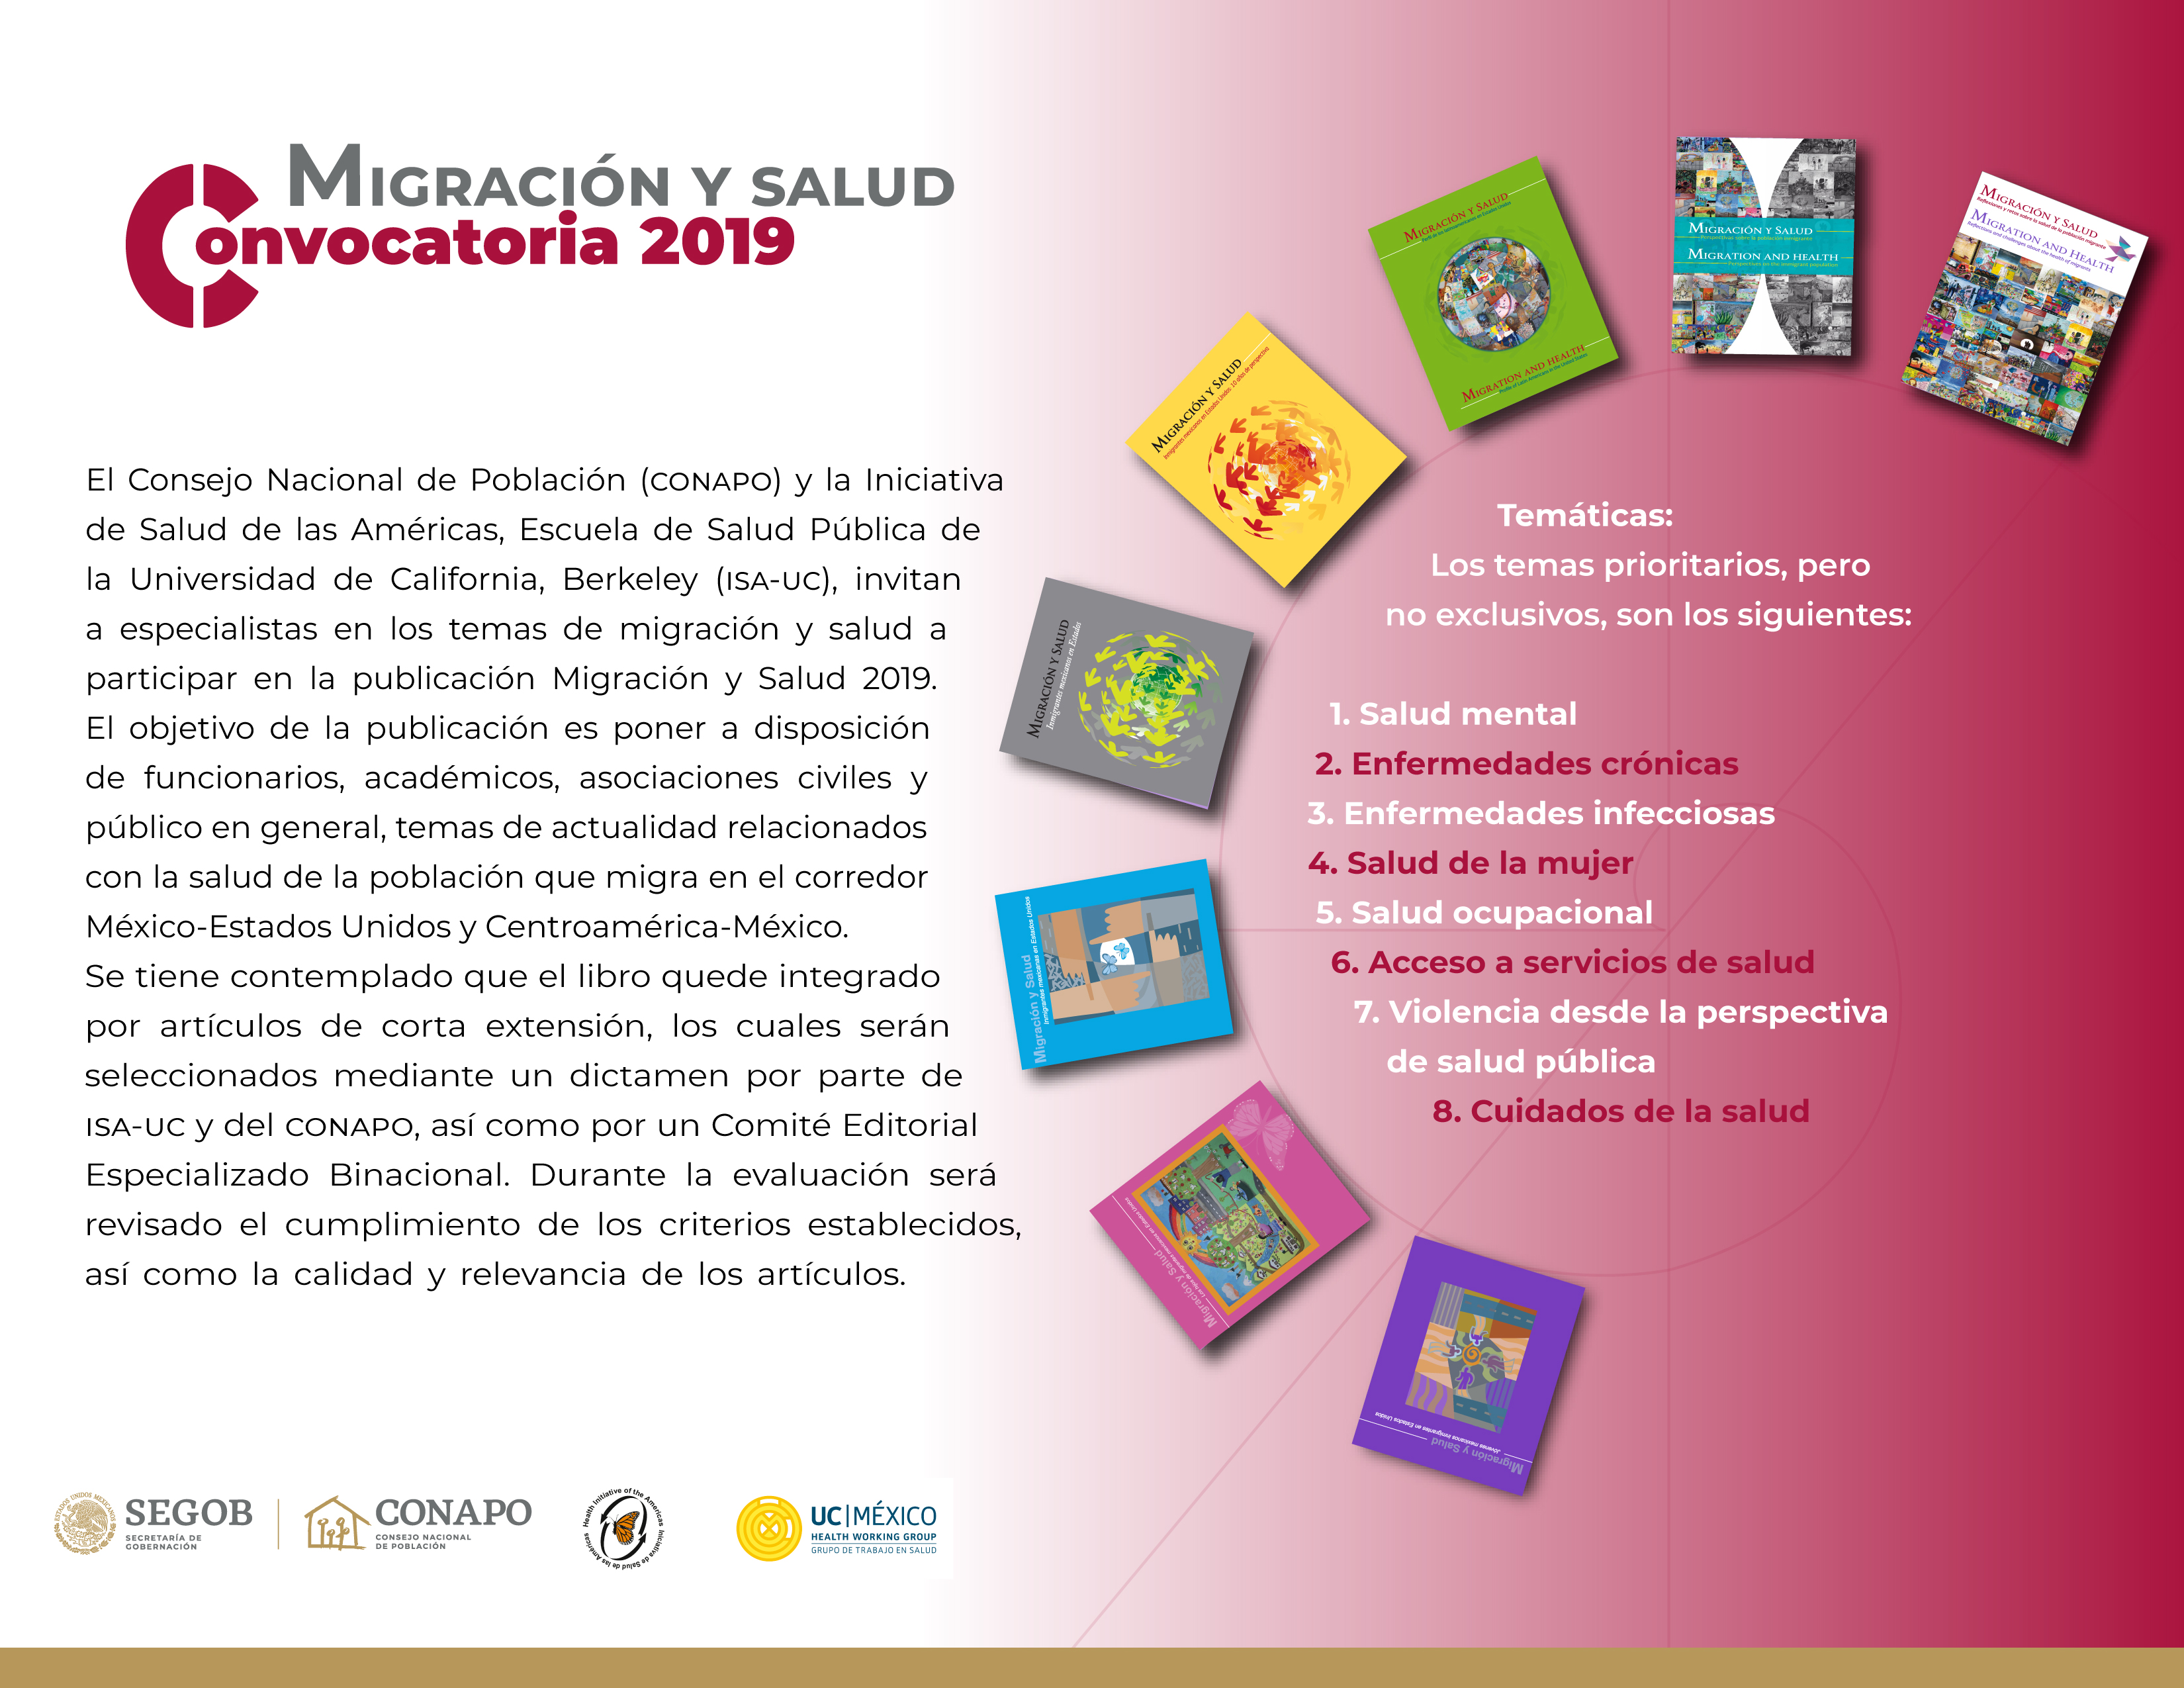 Invitación a participar en la publicación Migración y Salud 2019